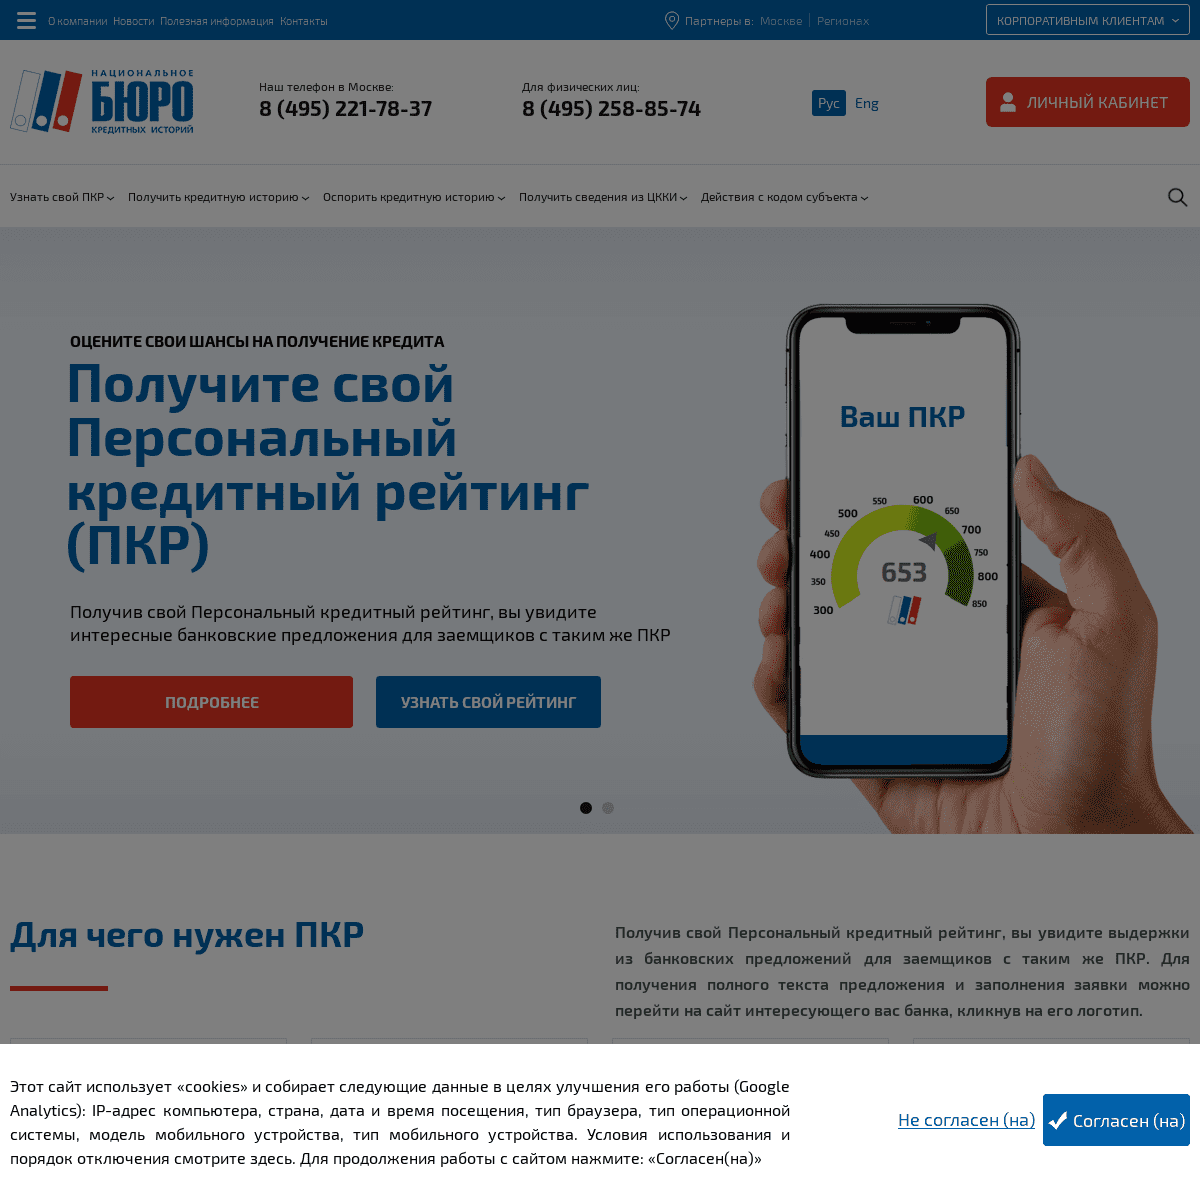 A complete backup of nbki.ru